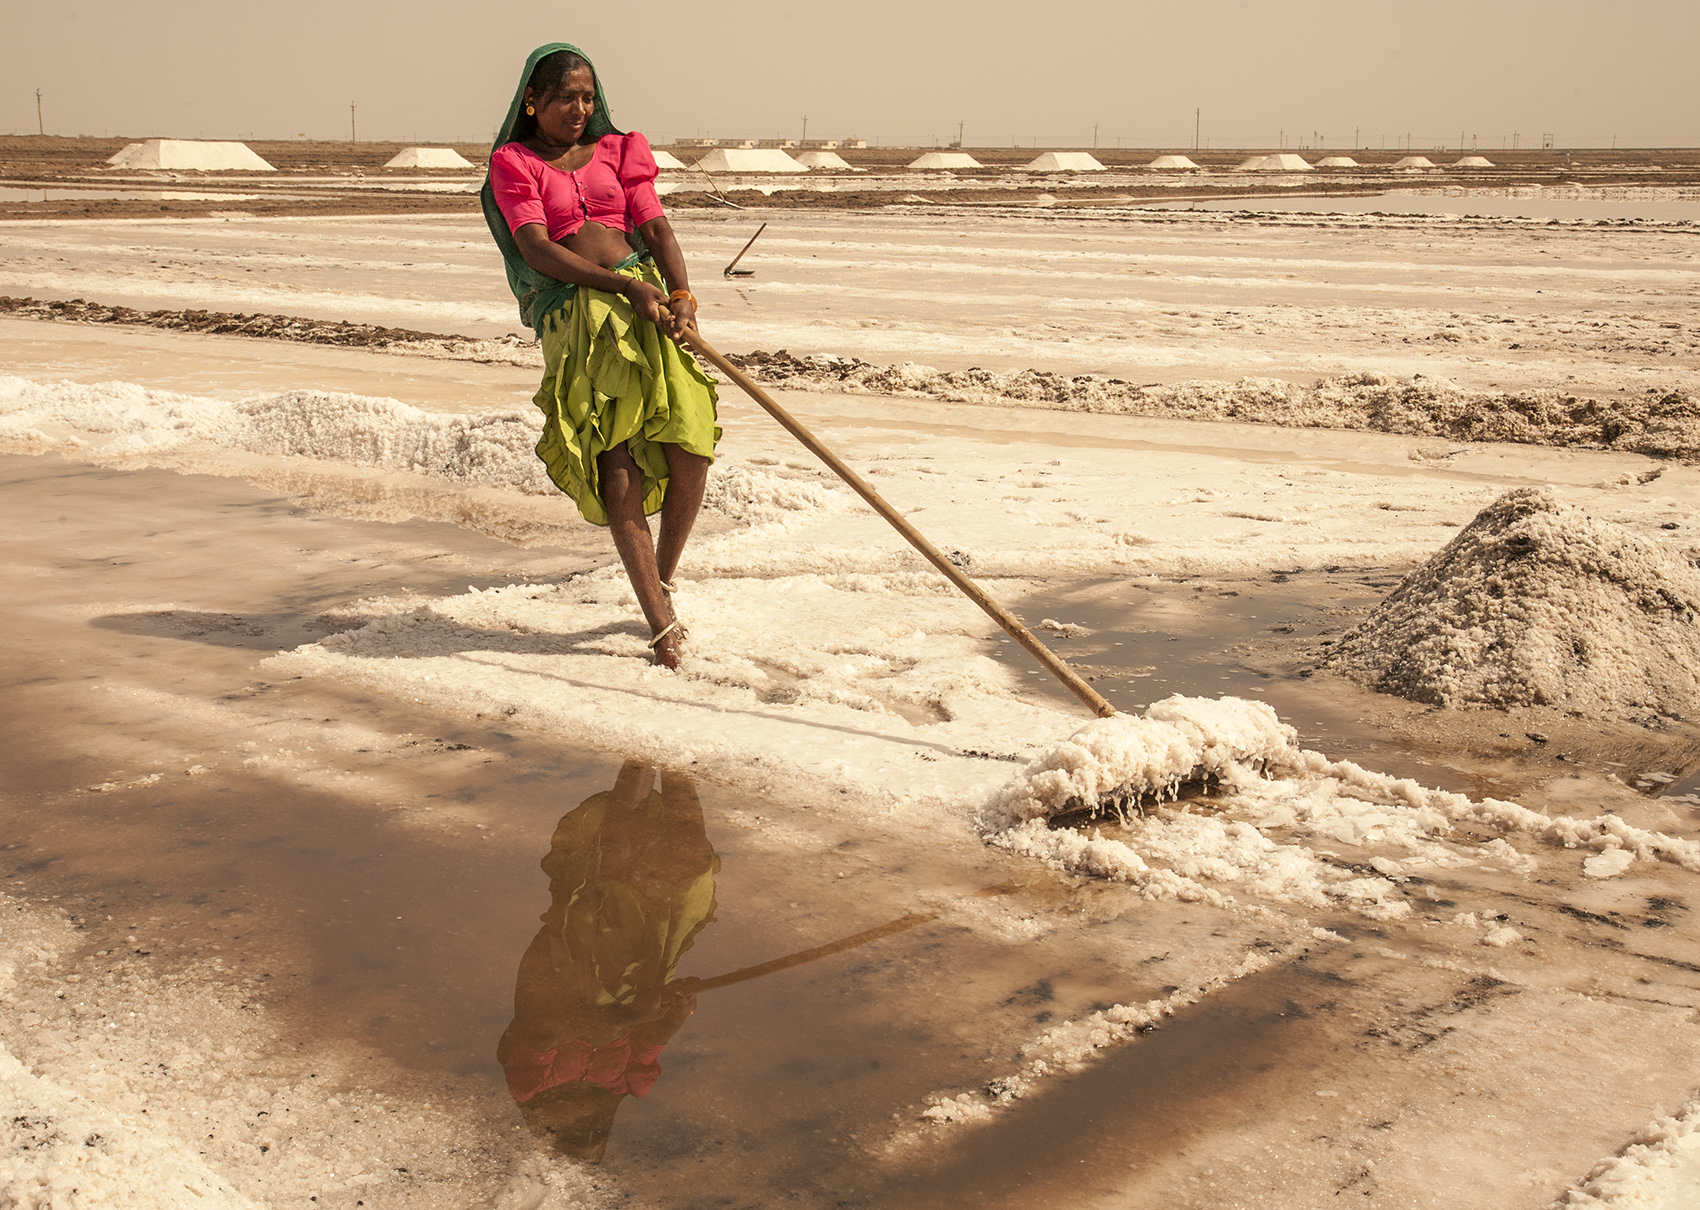 Little Rann salt mine, Gujarat, India